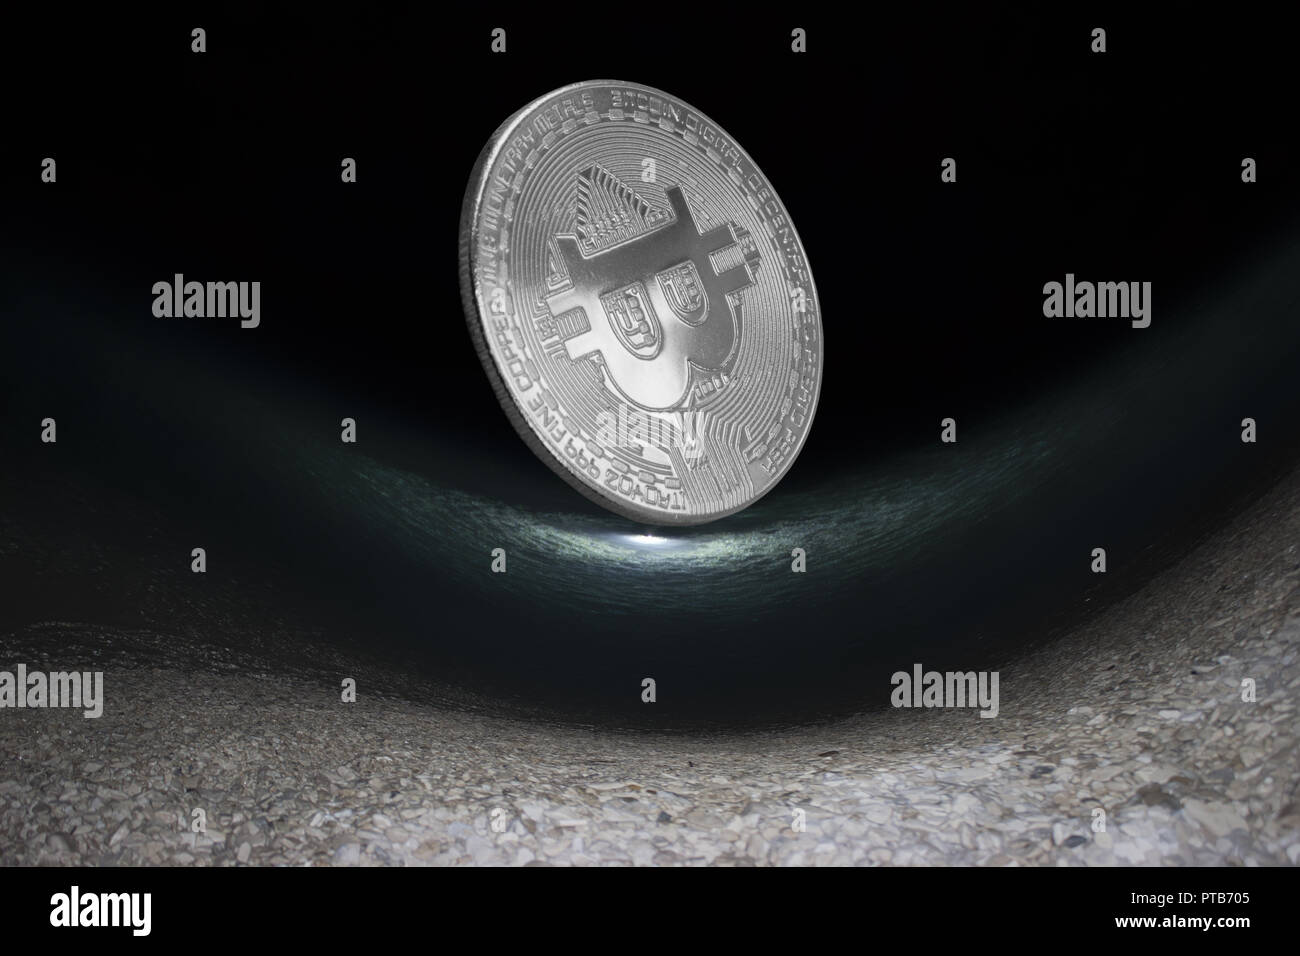 Abstrakte Foto von bitcoin am Meeresgrund. Silber münze einer virtuellen digitalen crypto Währung - bitcoin Stockfoto